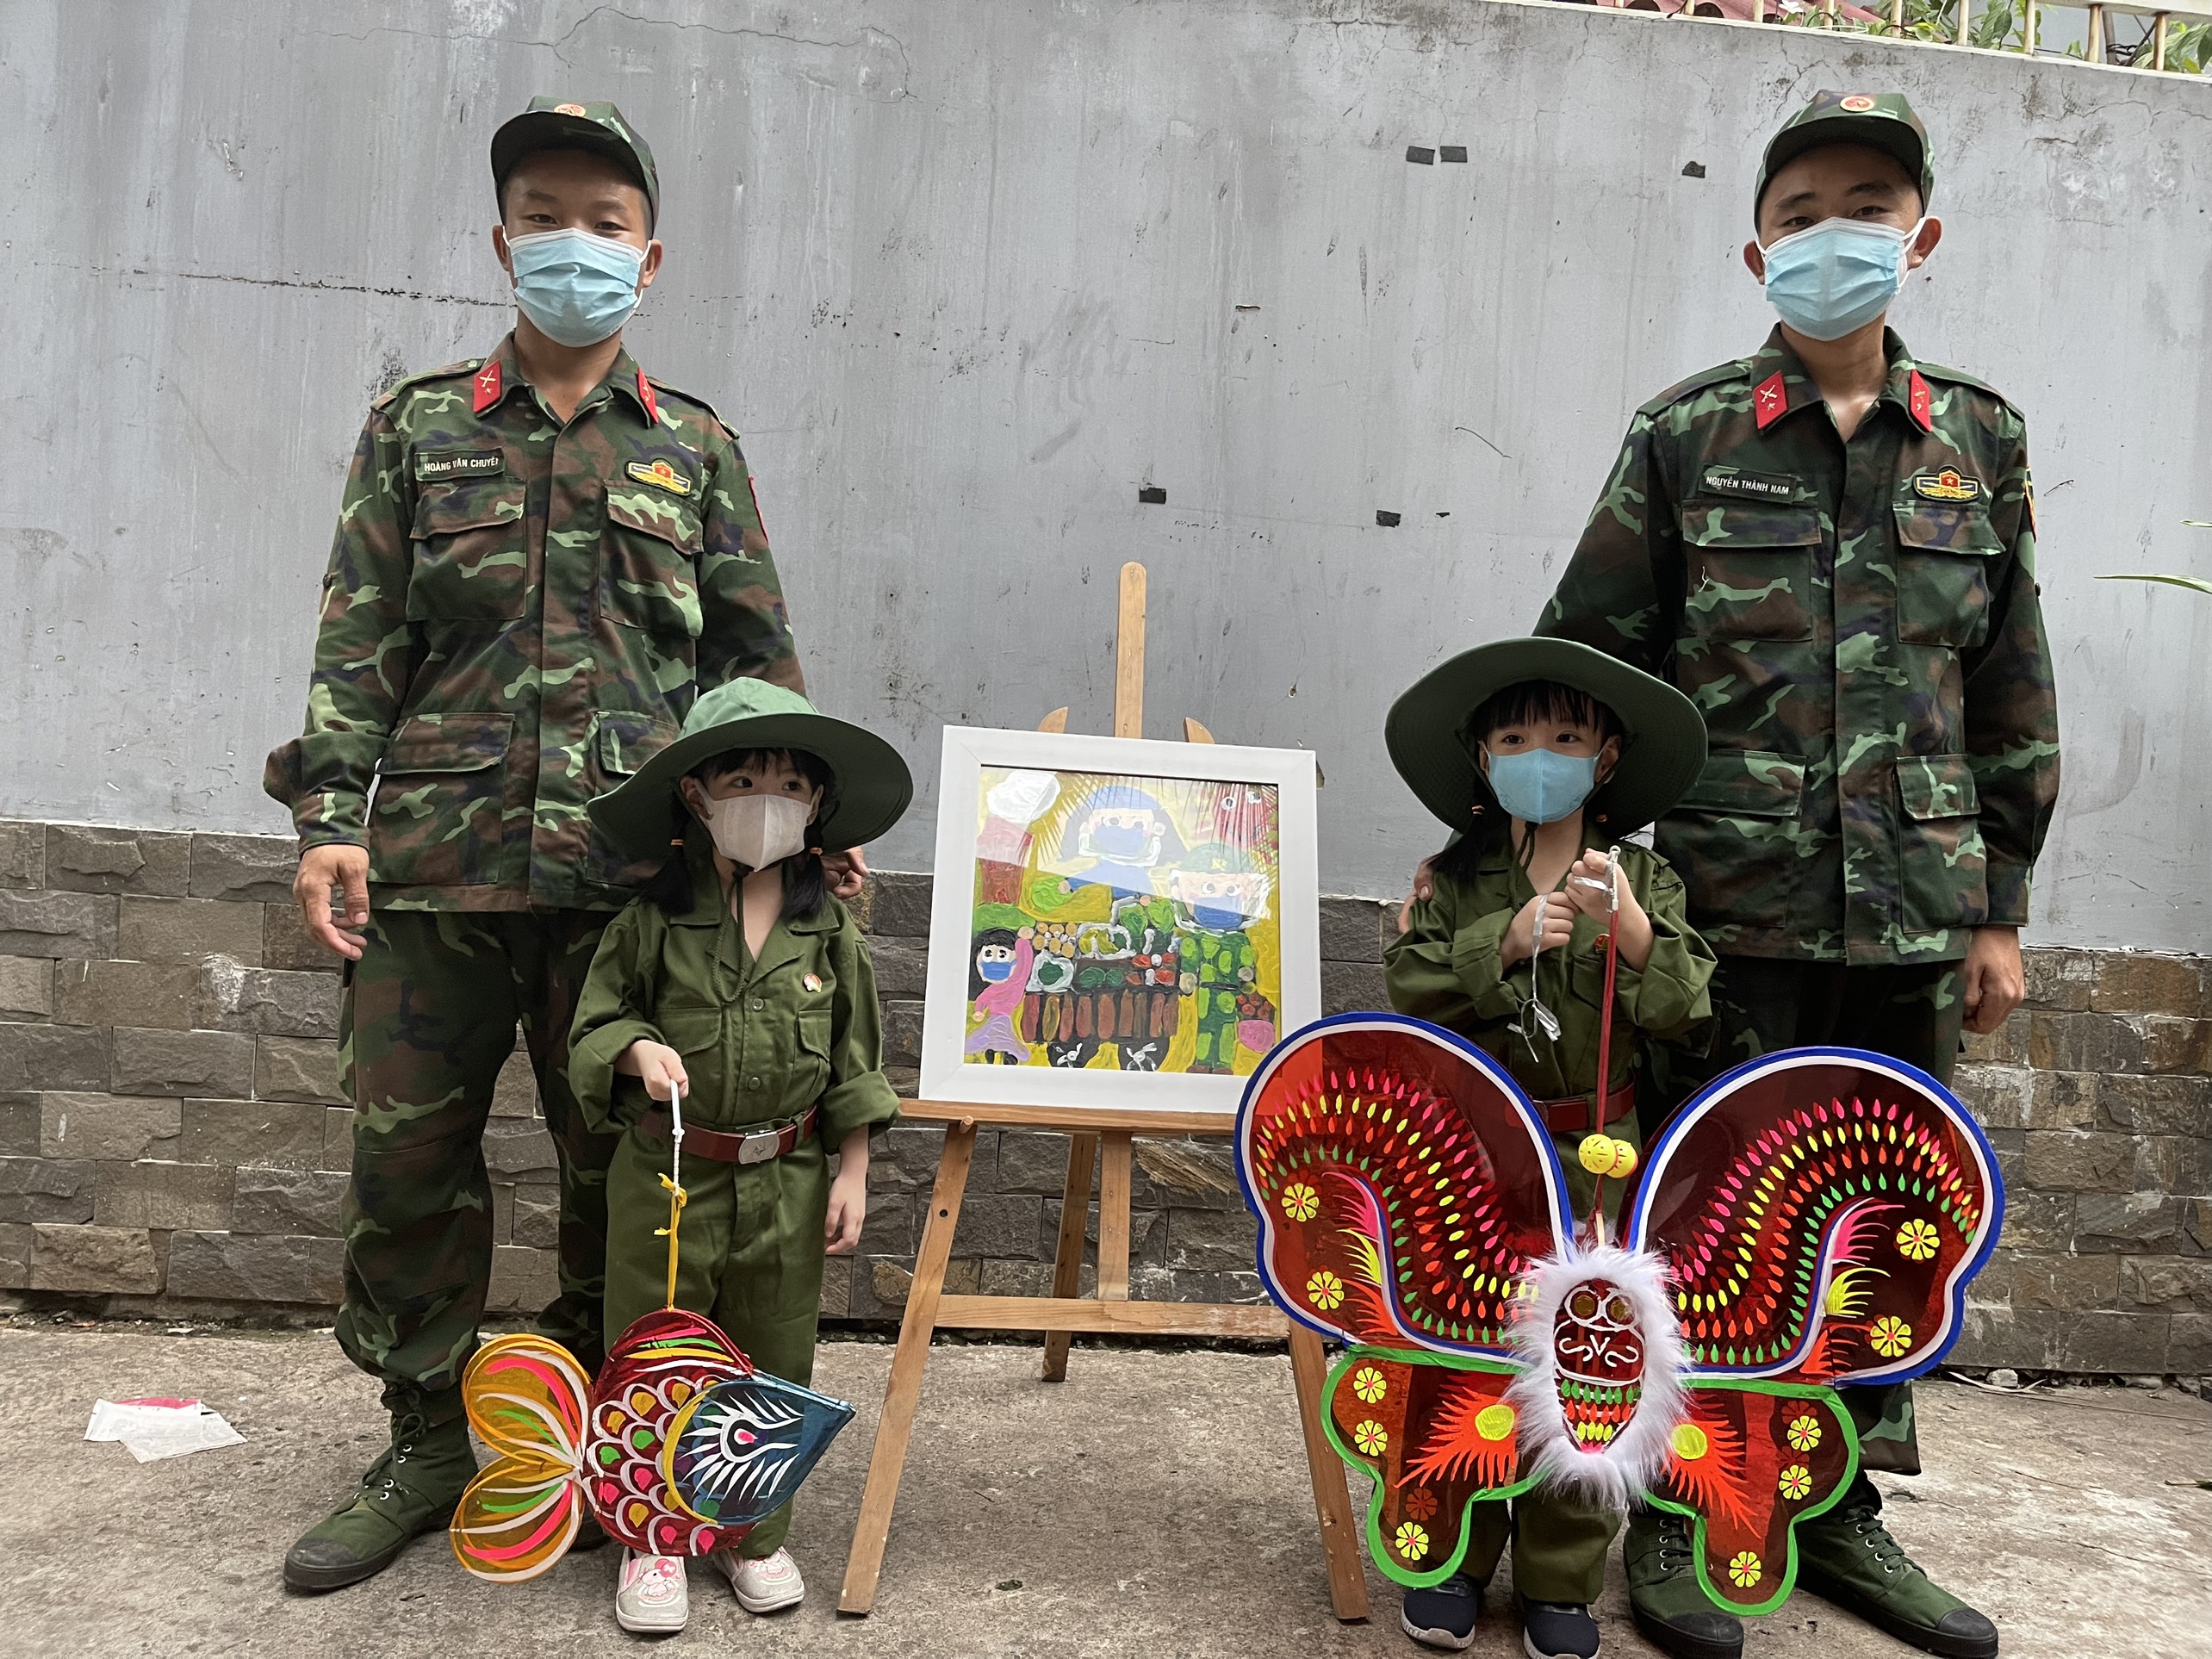 Sài Gòn, chú bộ đội, tranh vẽ: Bức tranh về Sài Gòn với các chú bộ đội nổi bật là một tác phẩm nghệ thuật đầy cảm hứng và sự trân trọng về lịch sử. Hãy khám phá hình ảnh này để hiểu hơn về quá trình xây dựng và phát triển của thành phố và tình yêu nước của các chiến sĩ bộ đội.